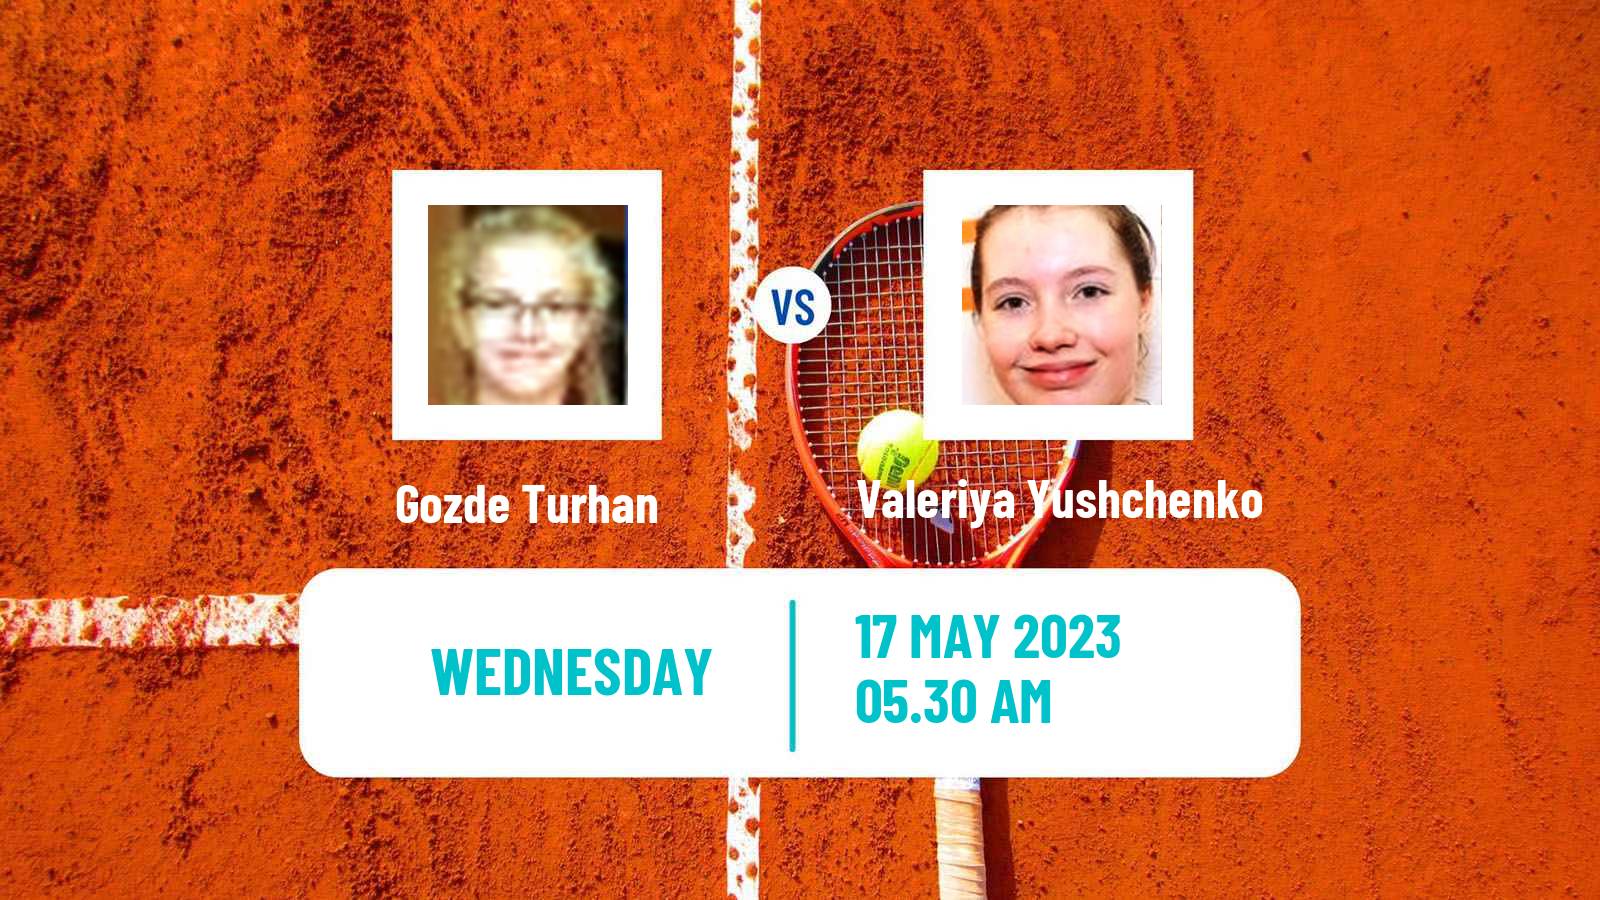 Tennis ITF W15 Antalya 16 Women Gozde Turhan - Valeriya Yushchenko